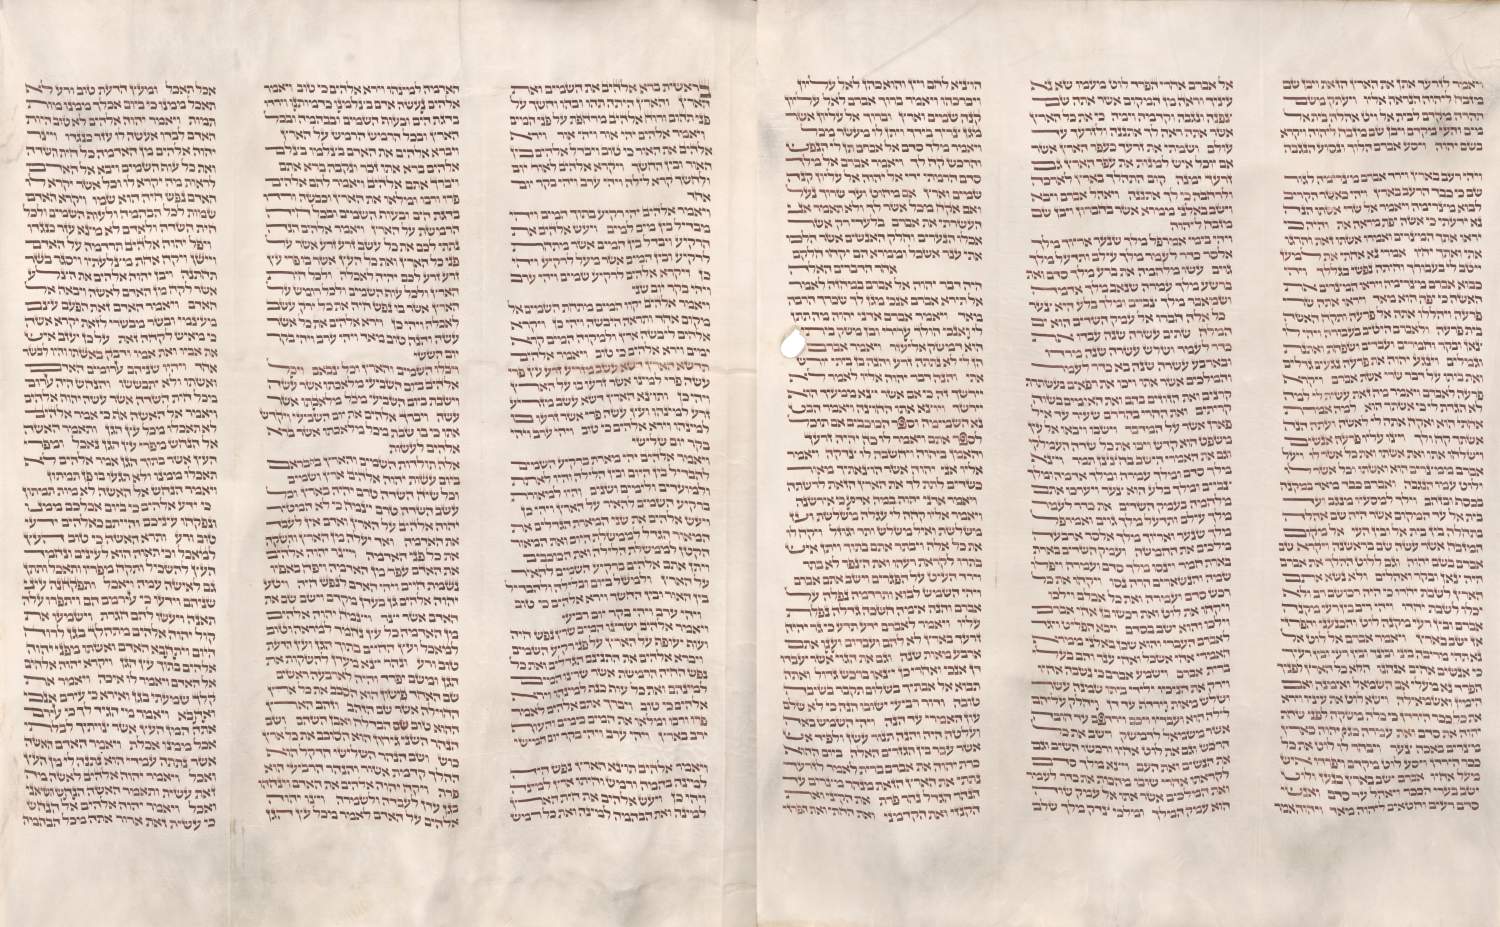 hebräische Handschrift